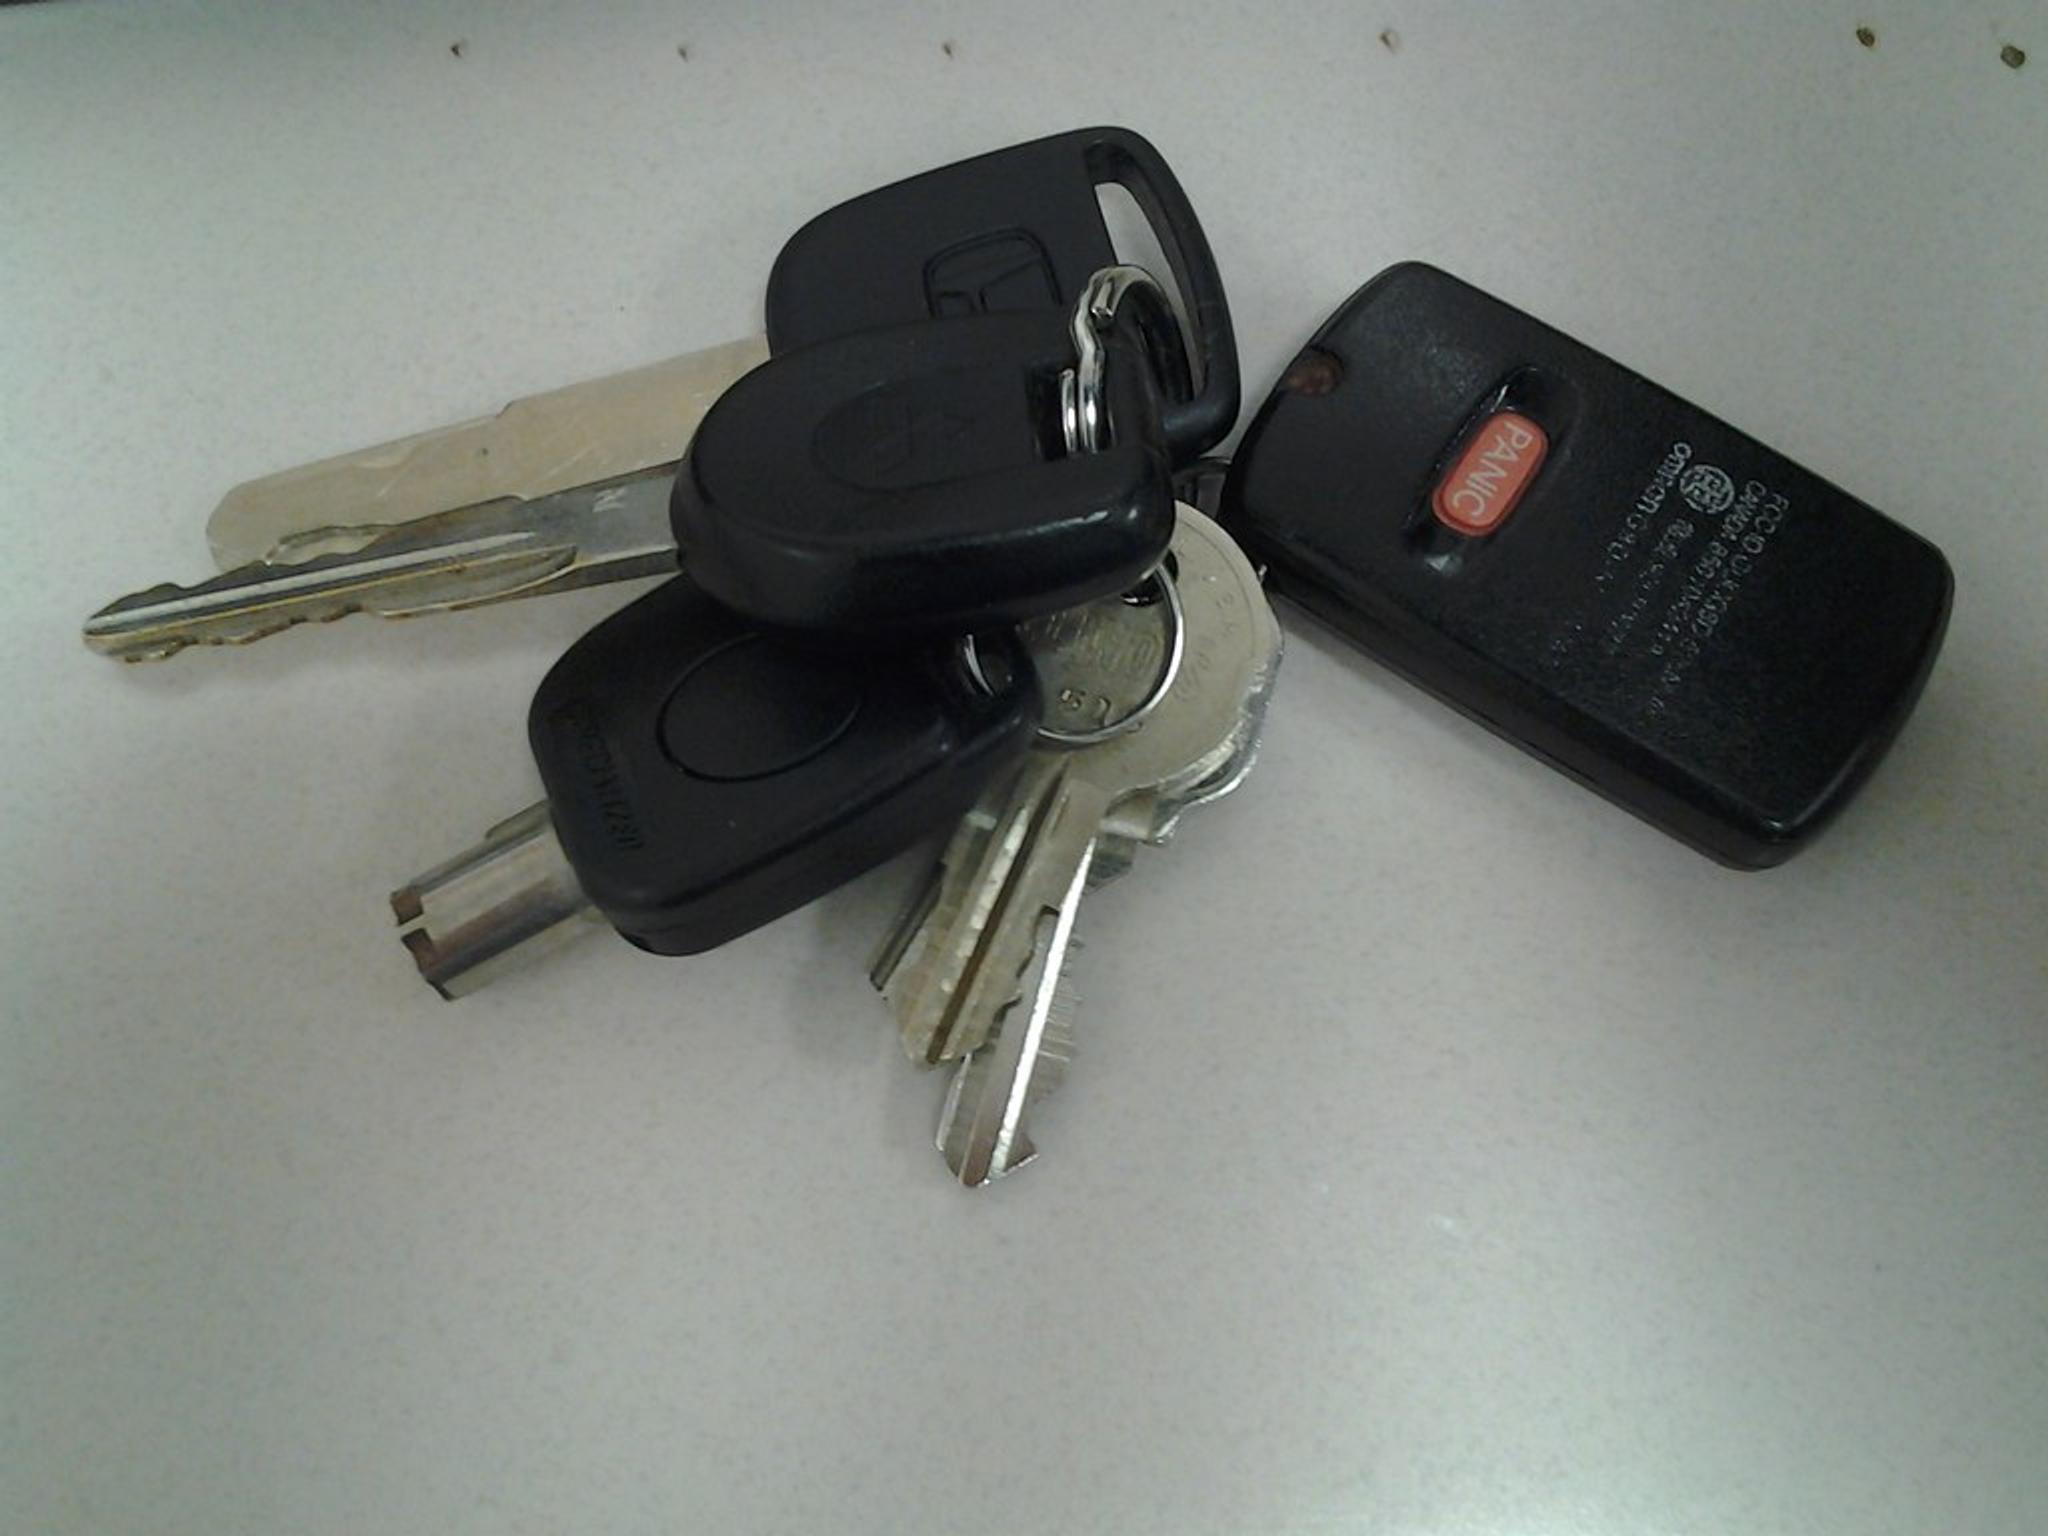 Car keys on the table